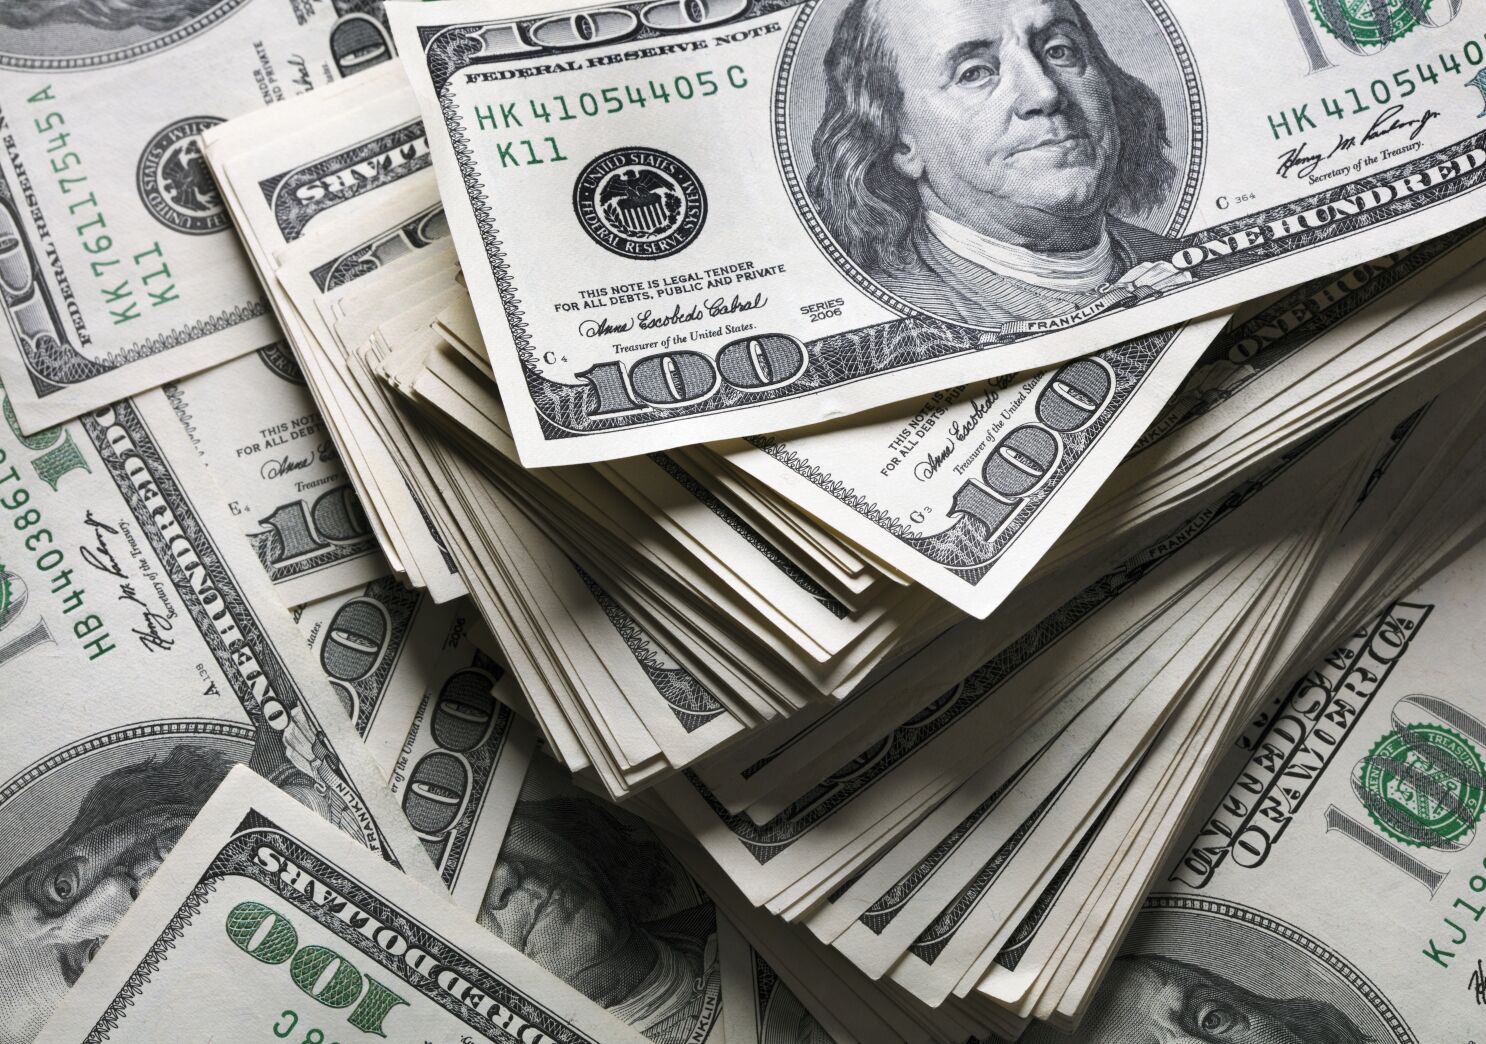 Trae mucho dinero en efectivo a EE.UU? Revele a la aduana o pagará el precio - Los Angeles Times